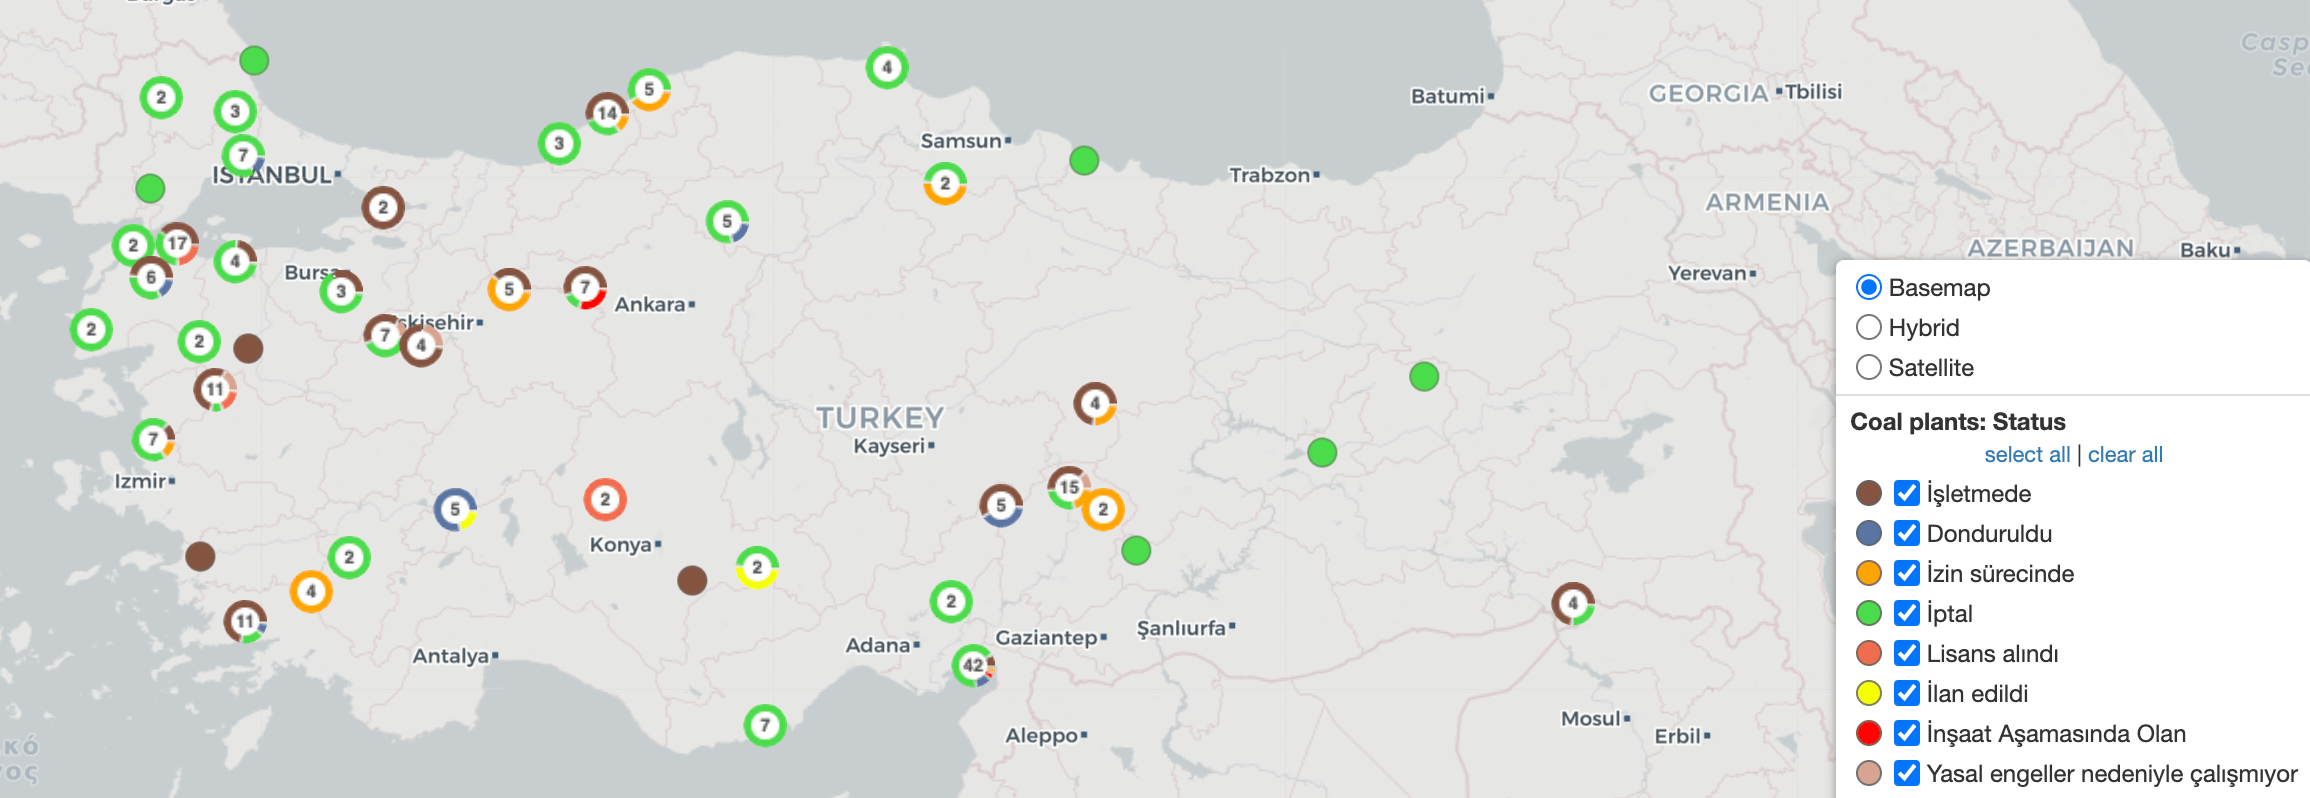 temiz komur turkiye termik santral haritasi turkce